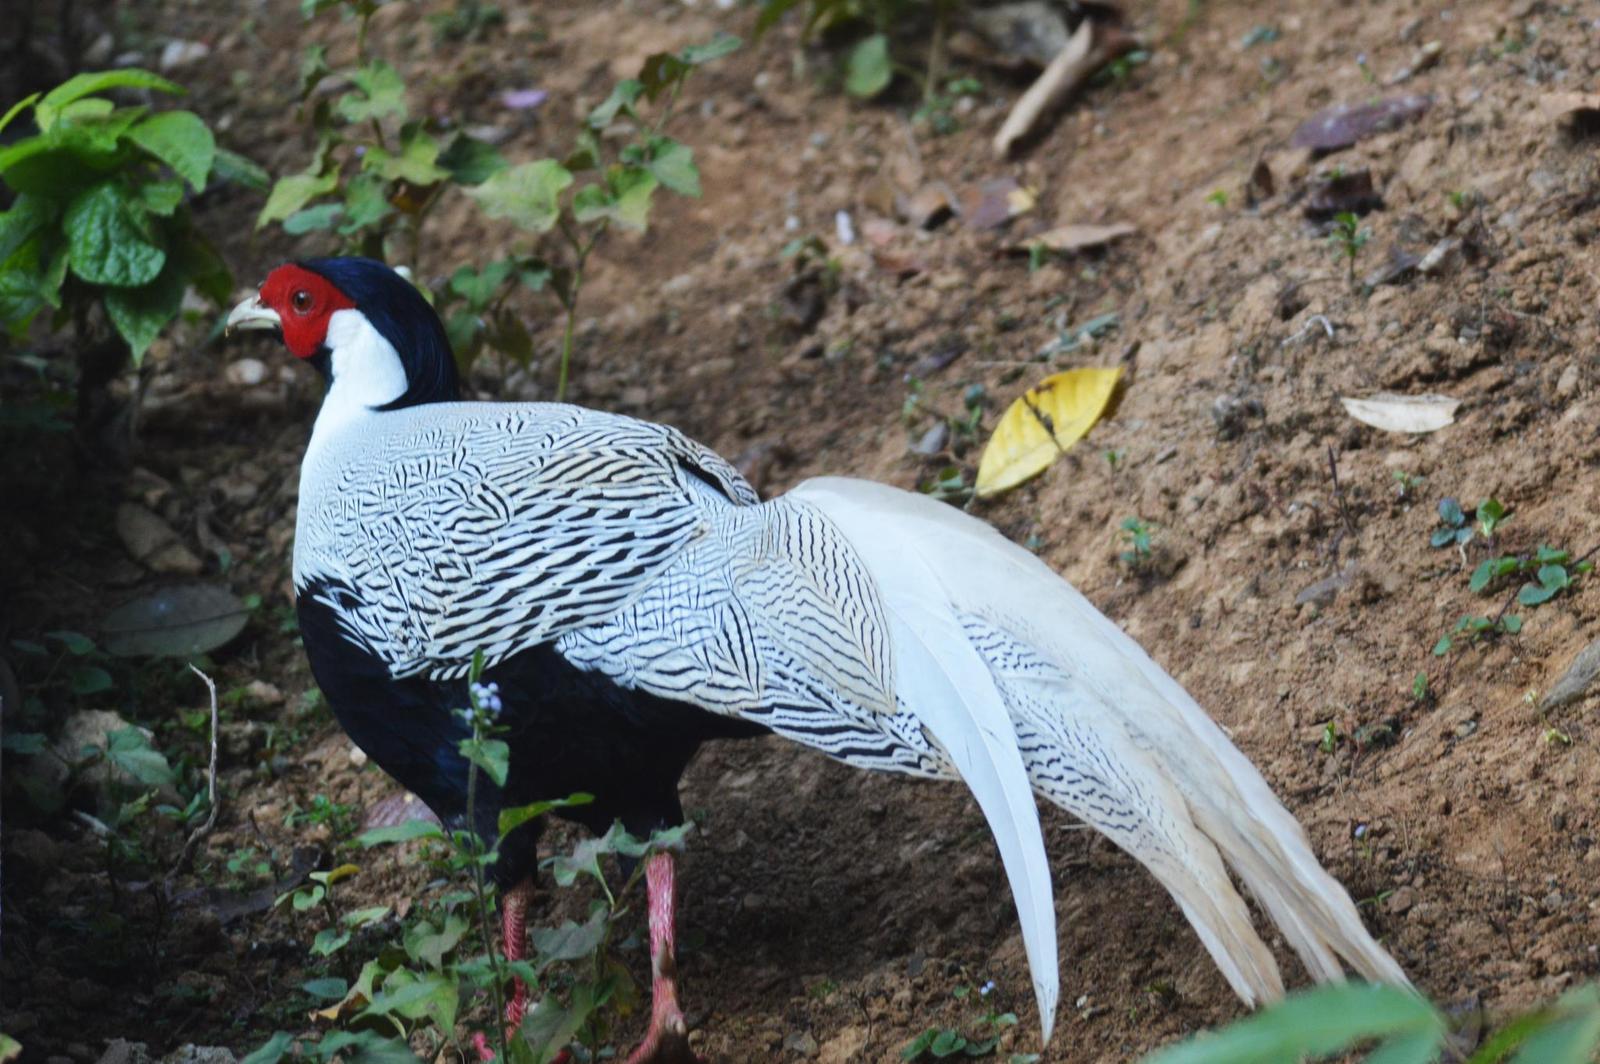 Silver Pheasant Photo by Uthai Cheummarung